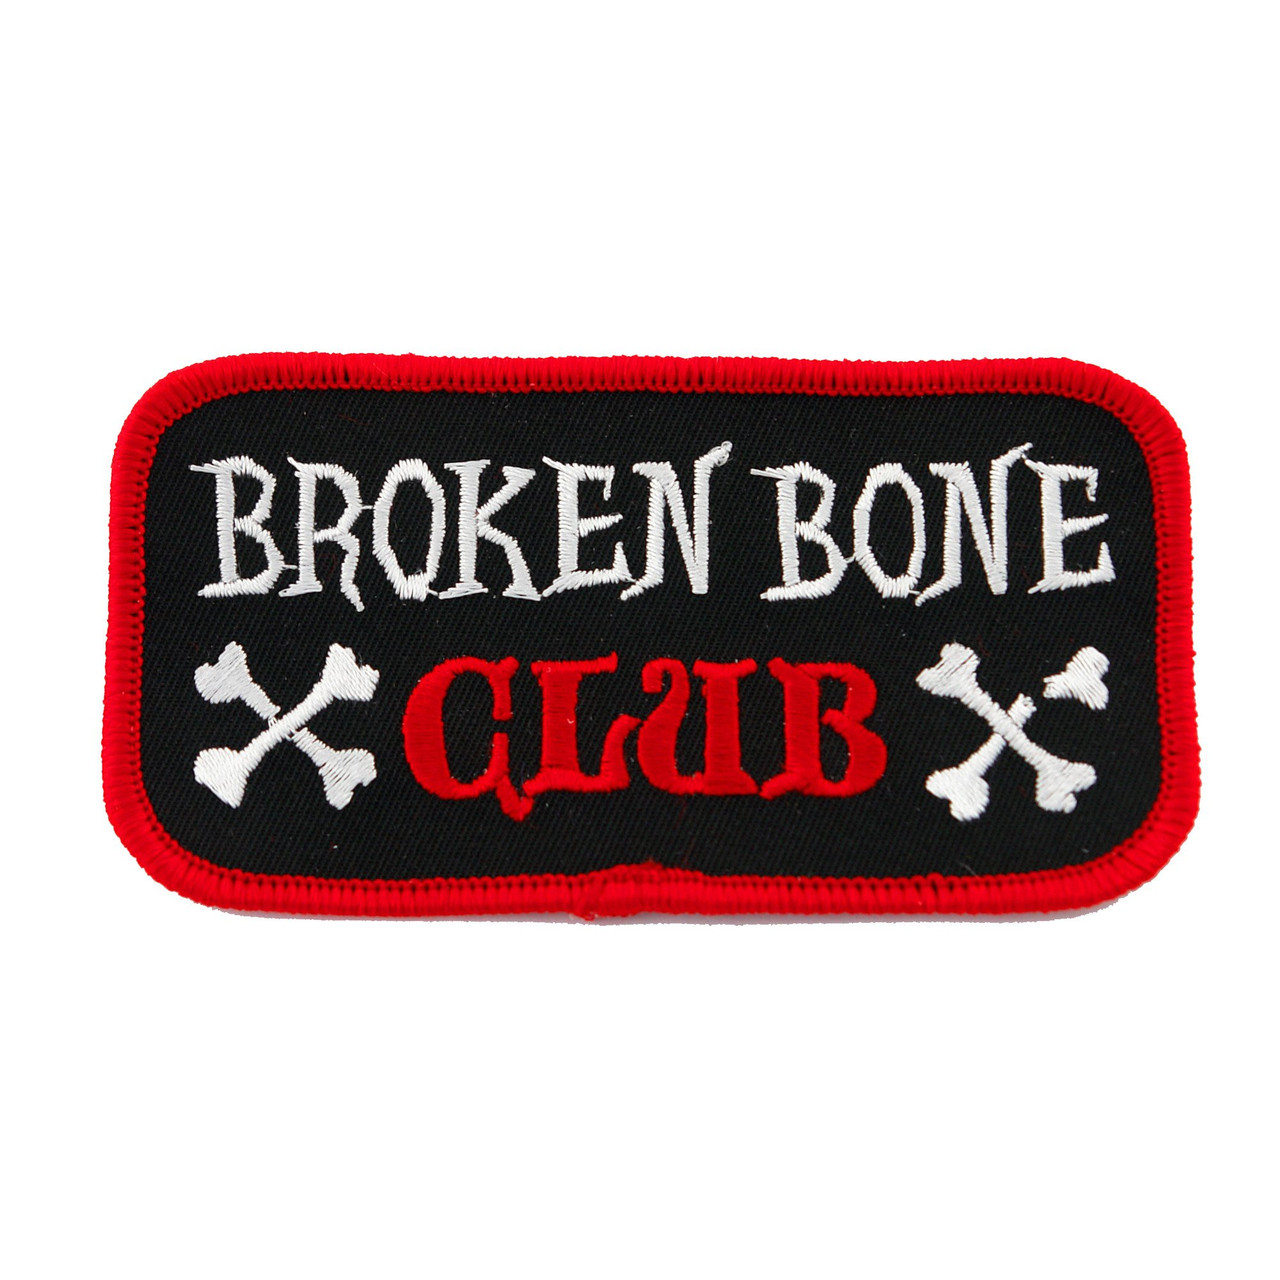  Member Broken Leg Club Break Bones Orthopedic Zip